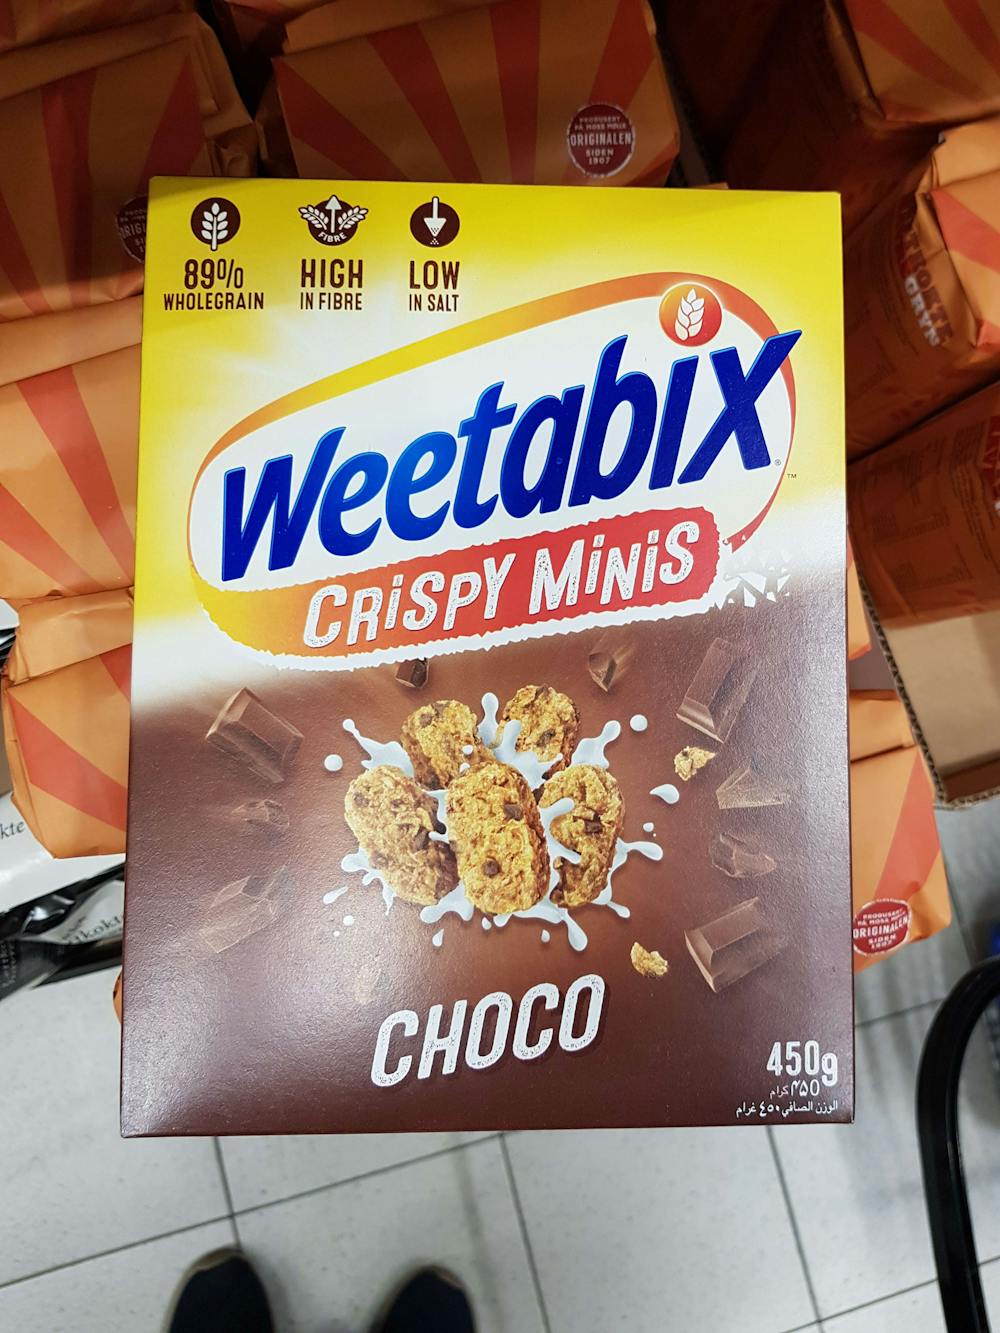 Weetabix crispy minis choco, Weetabix